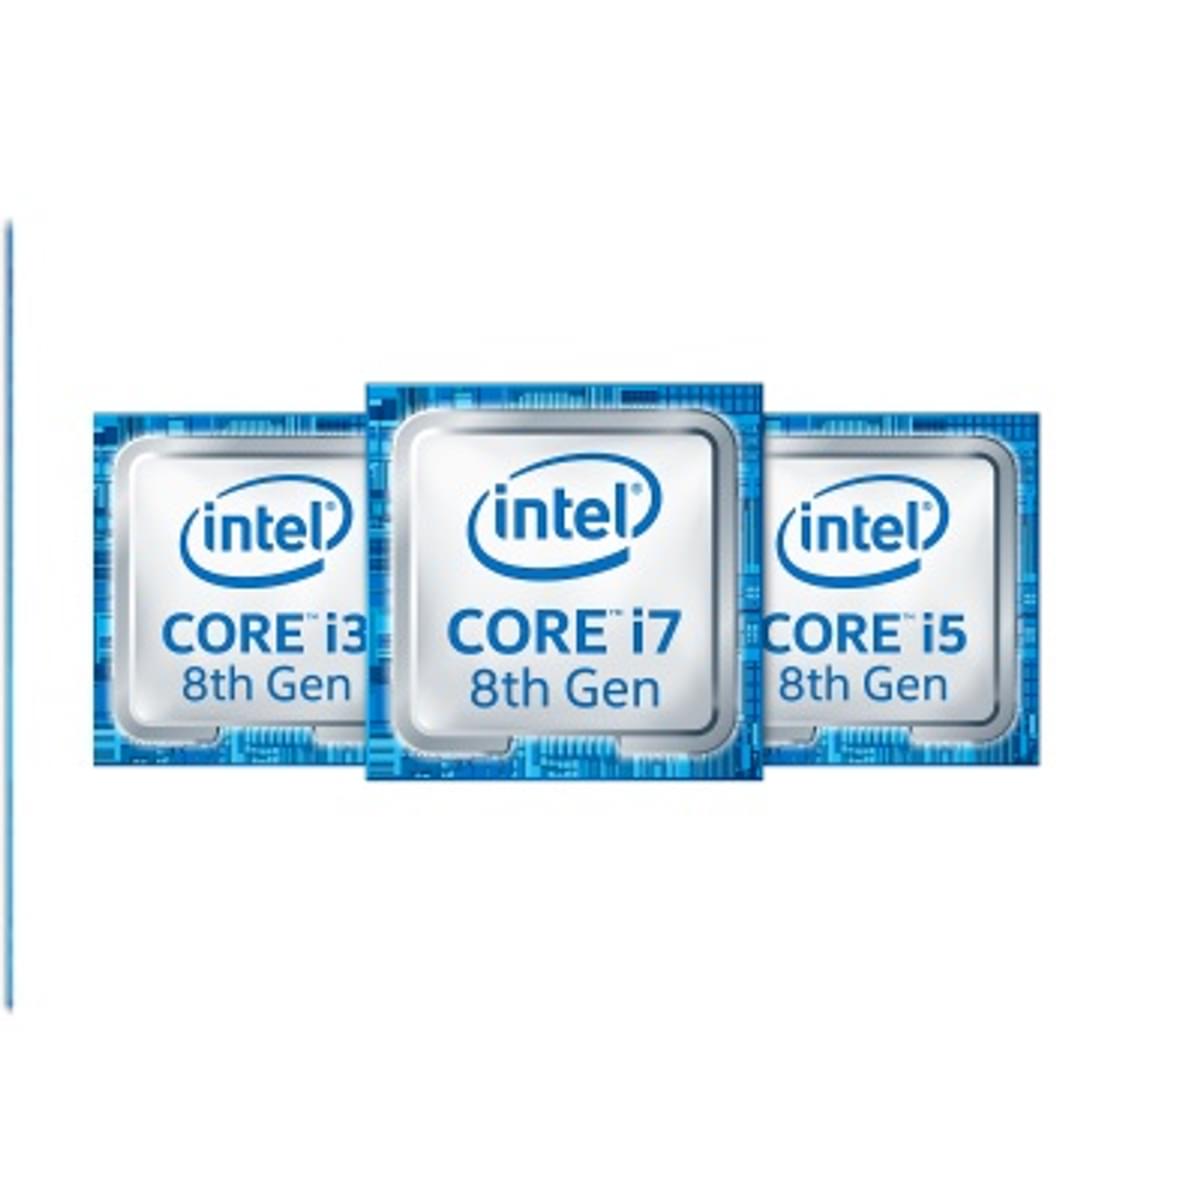 Intel achtste-generatie i7 / i5 processors komen eraan image